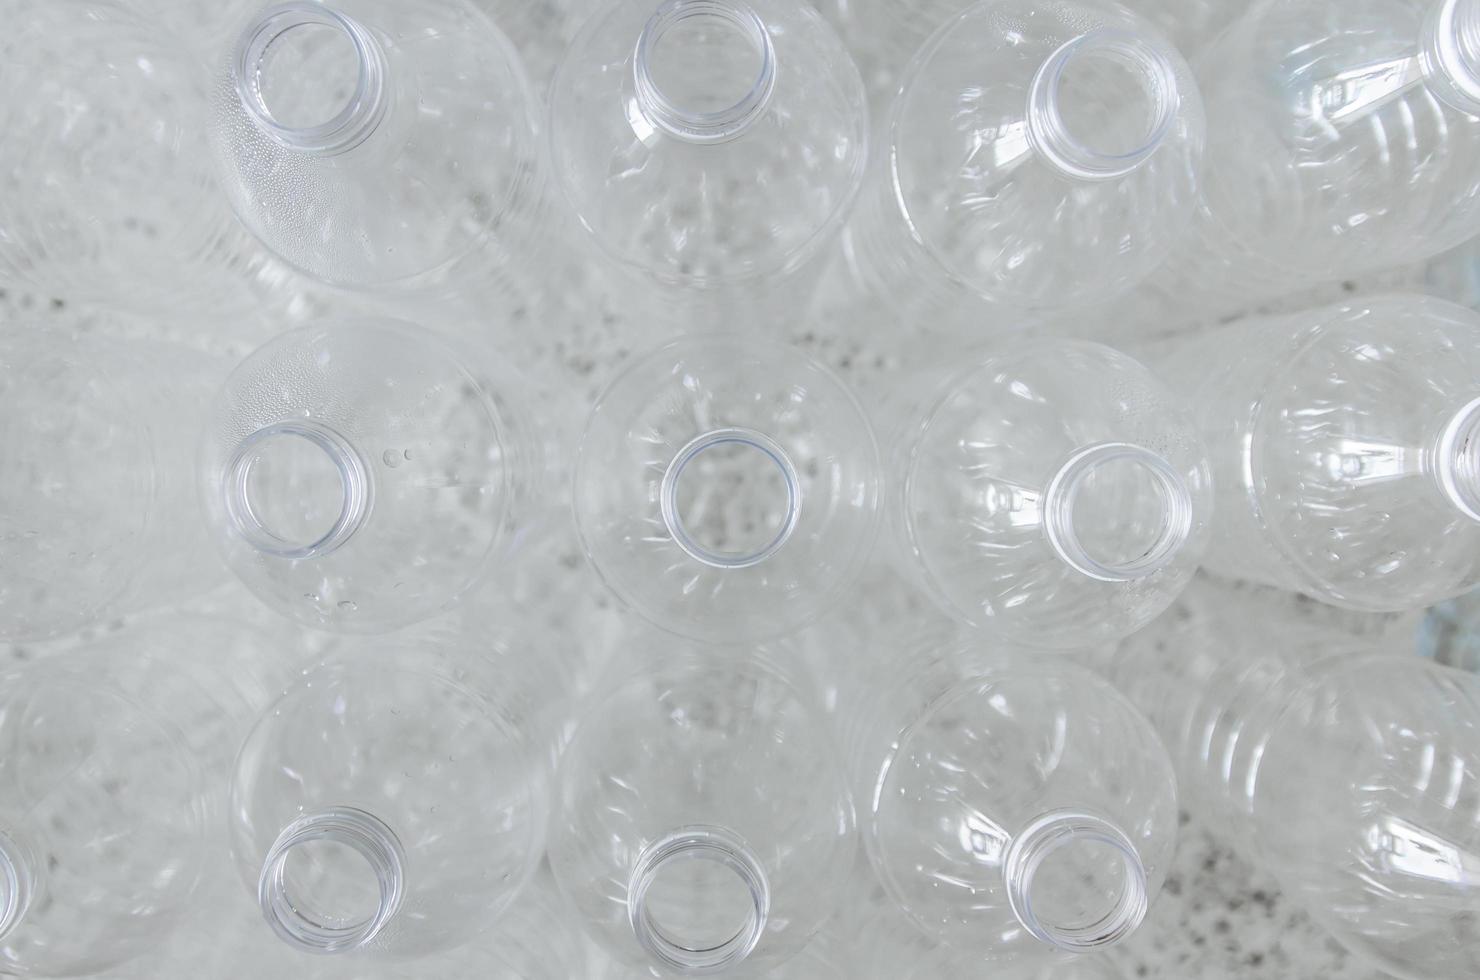 lege flessen voor recycling, campagne om plastic te verminderen en de wereld te redden. foto